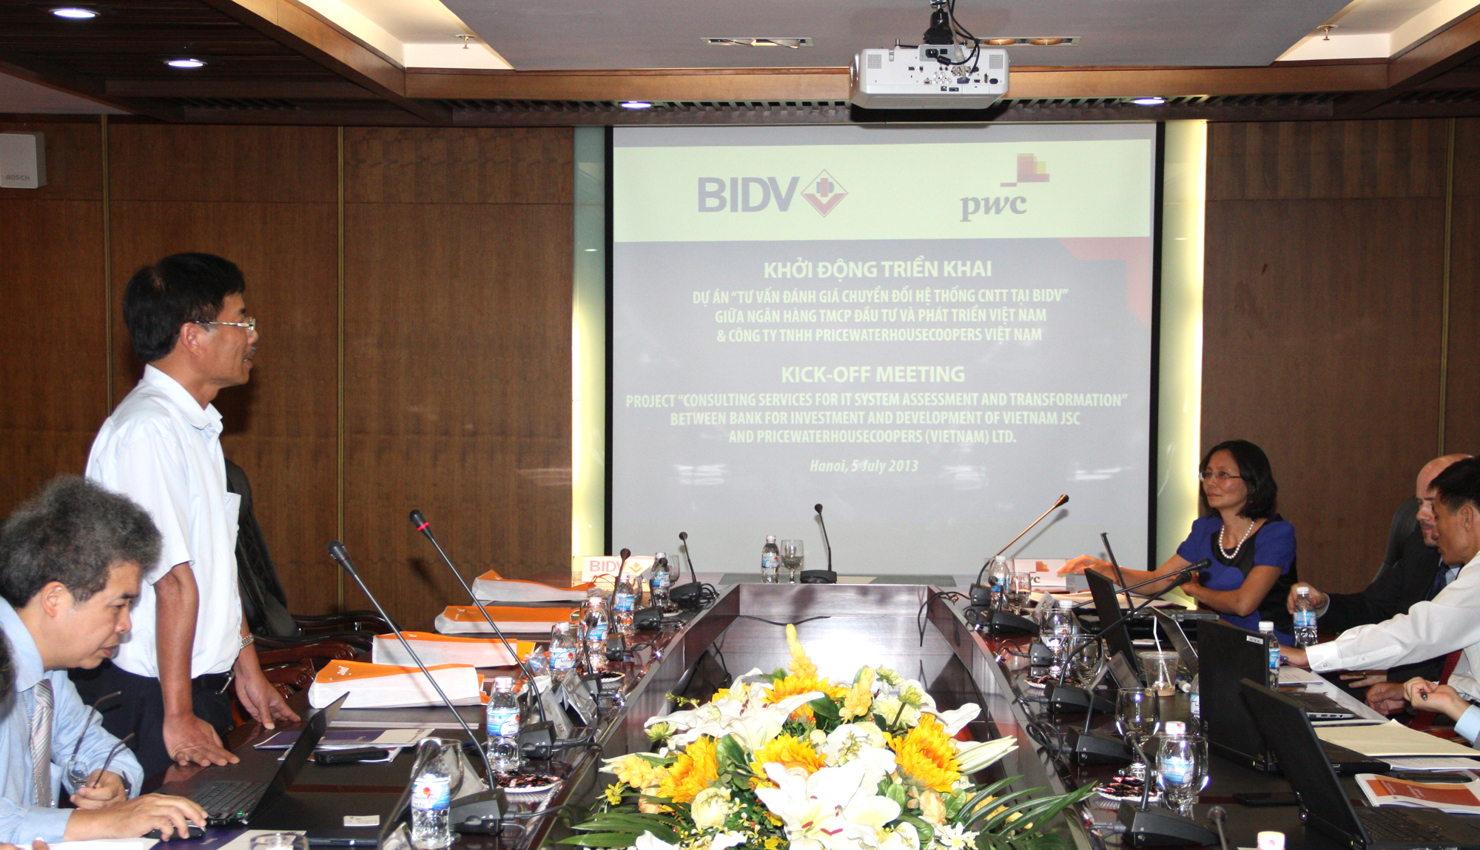 Toàn cảnh Lễ khởi động triển khai Dự án “Tư vấn đánh giá chuyển đổi hệ thống công nghệ thông tin tại BIDV”